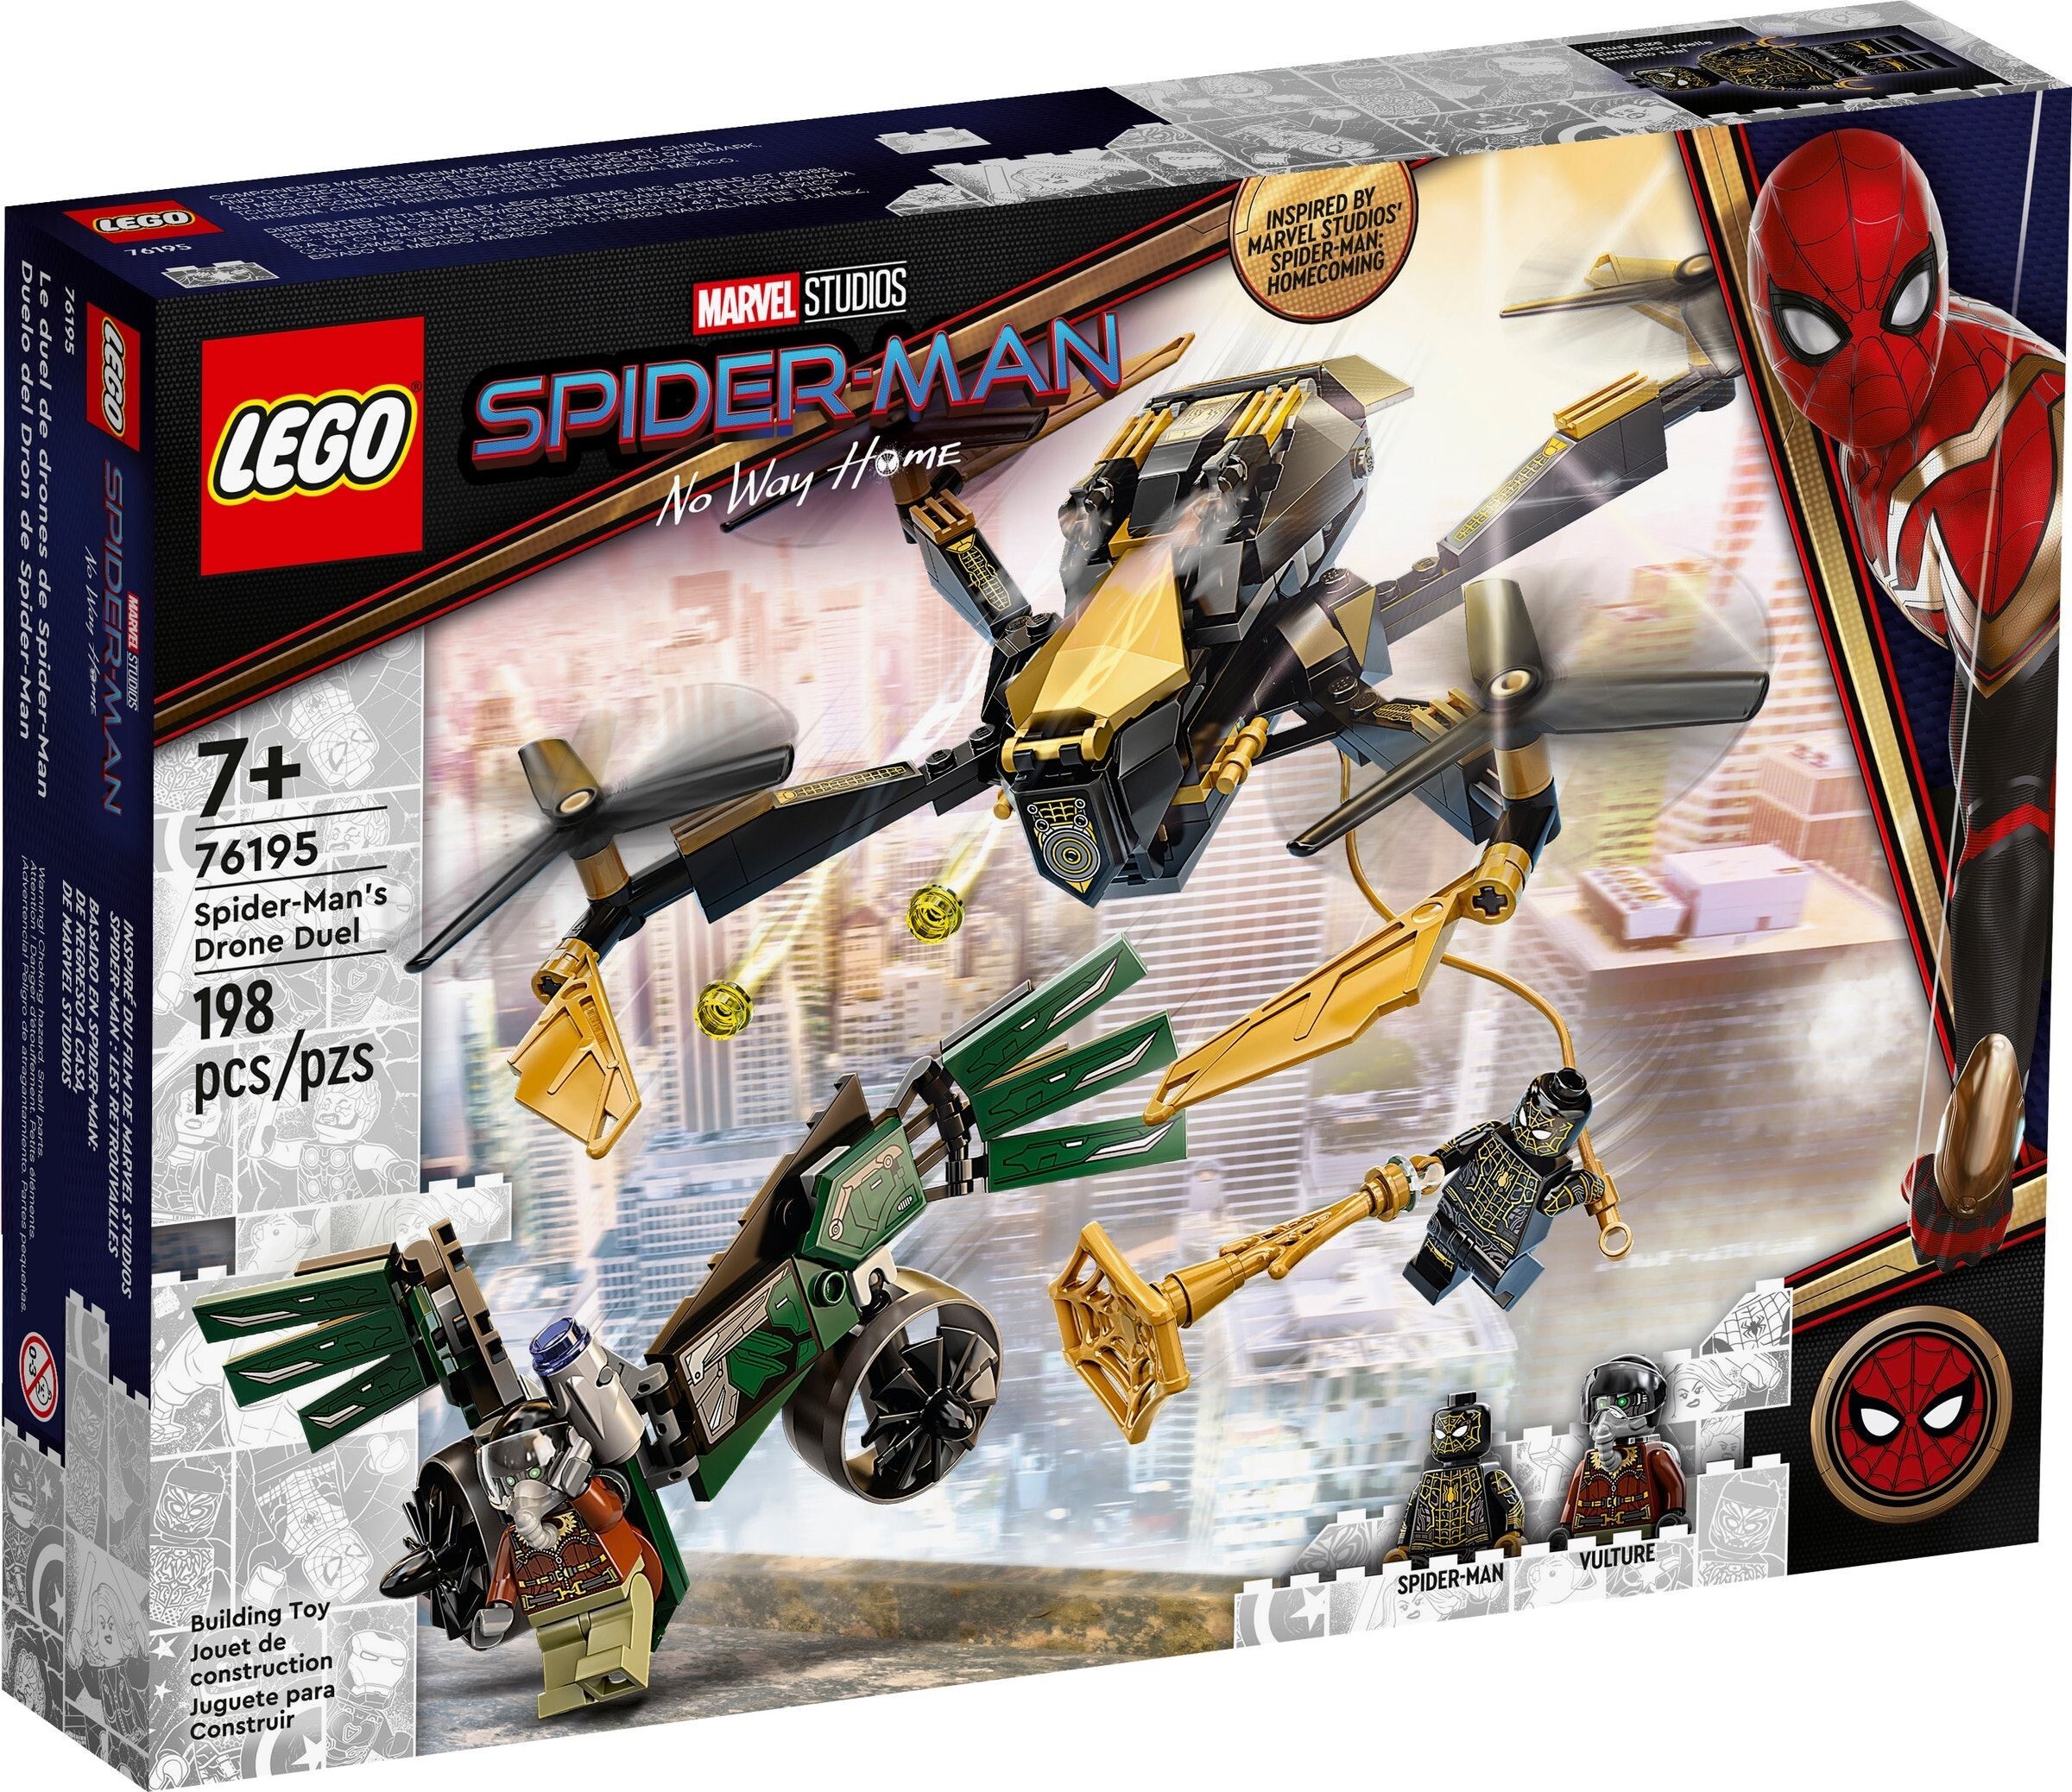 

Конструктор Lego Marvel Spiderman Дуэль дронов Человека-Паука (76195)